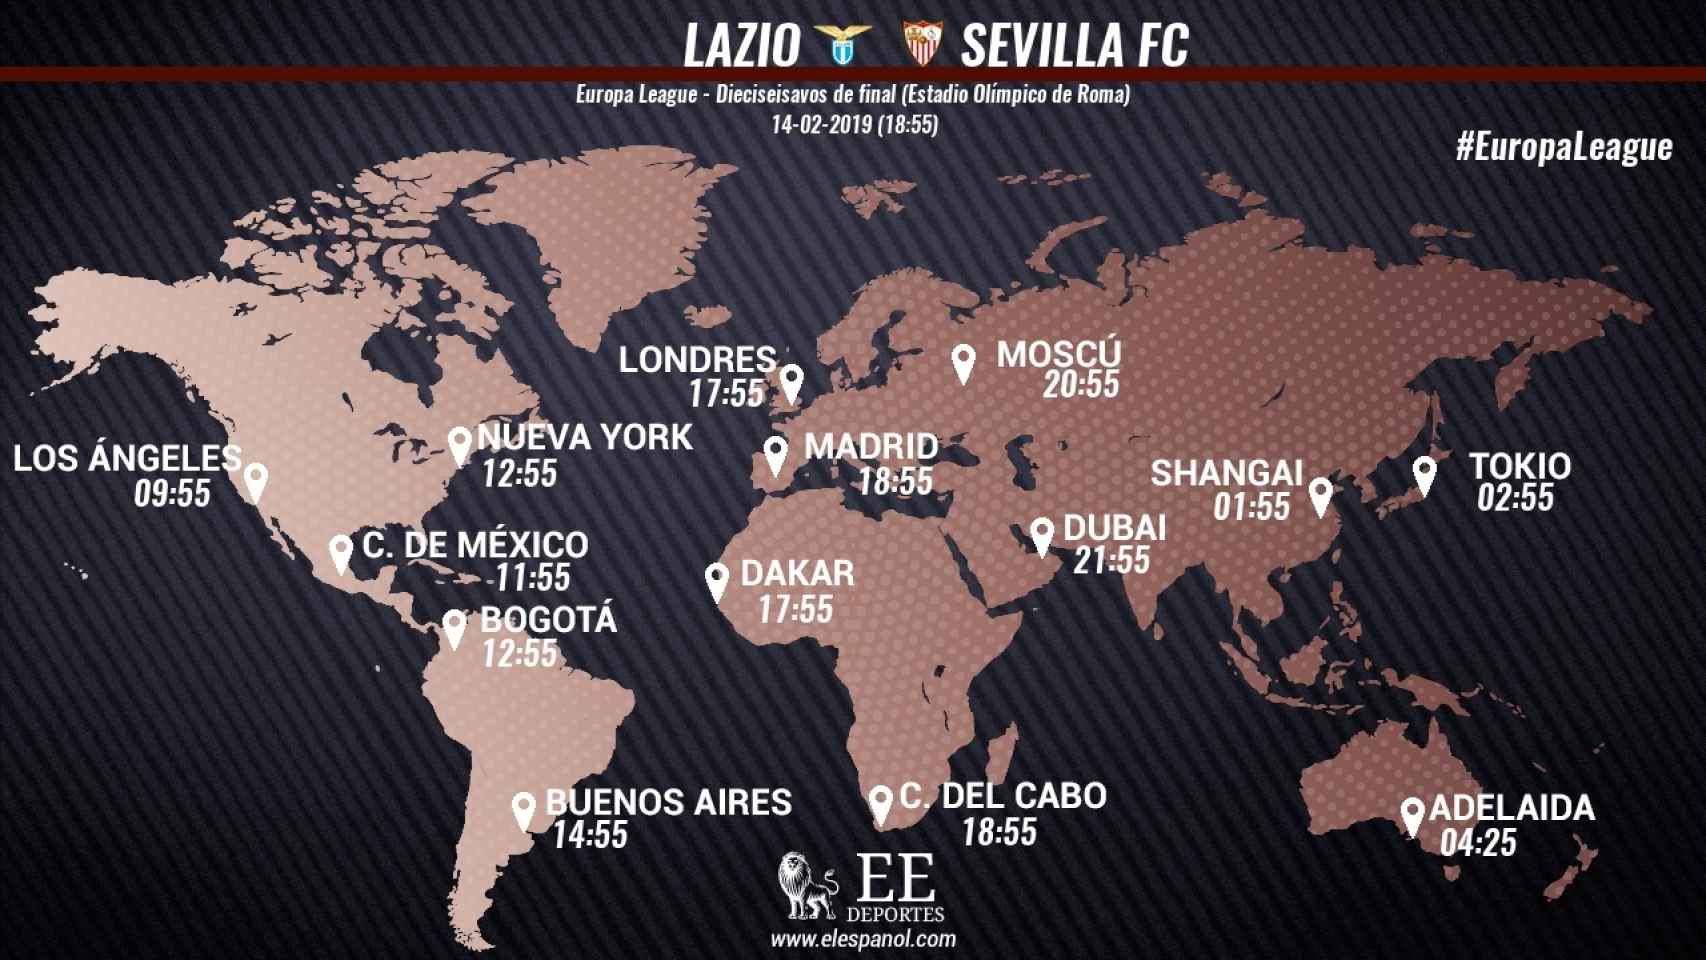 Horario del Lazio - Sevilla